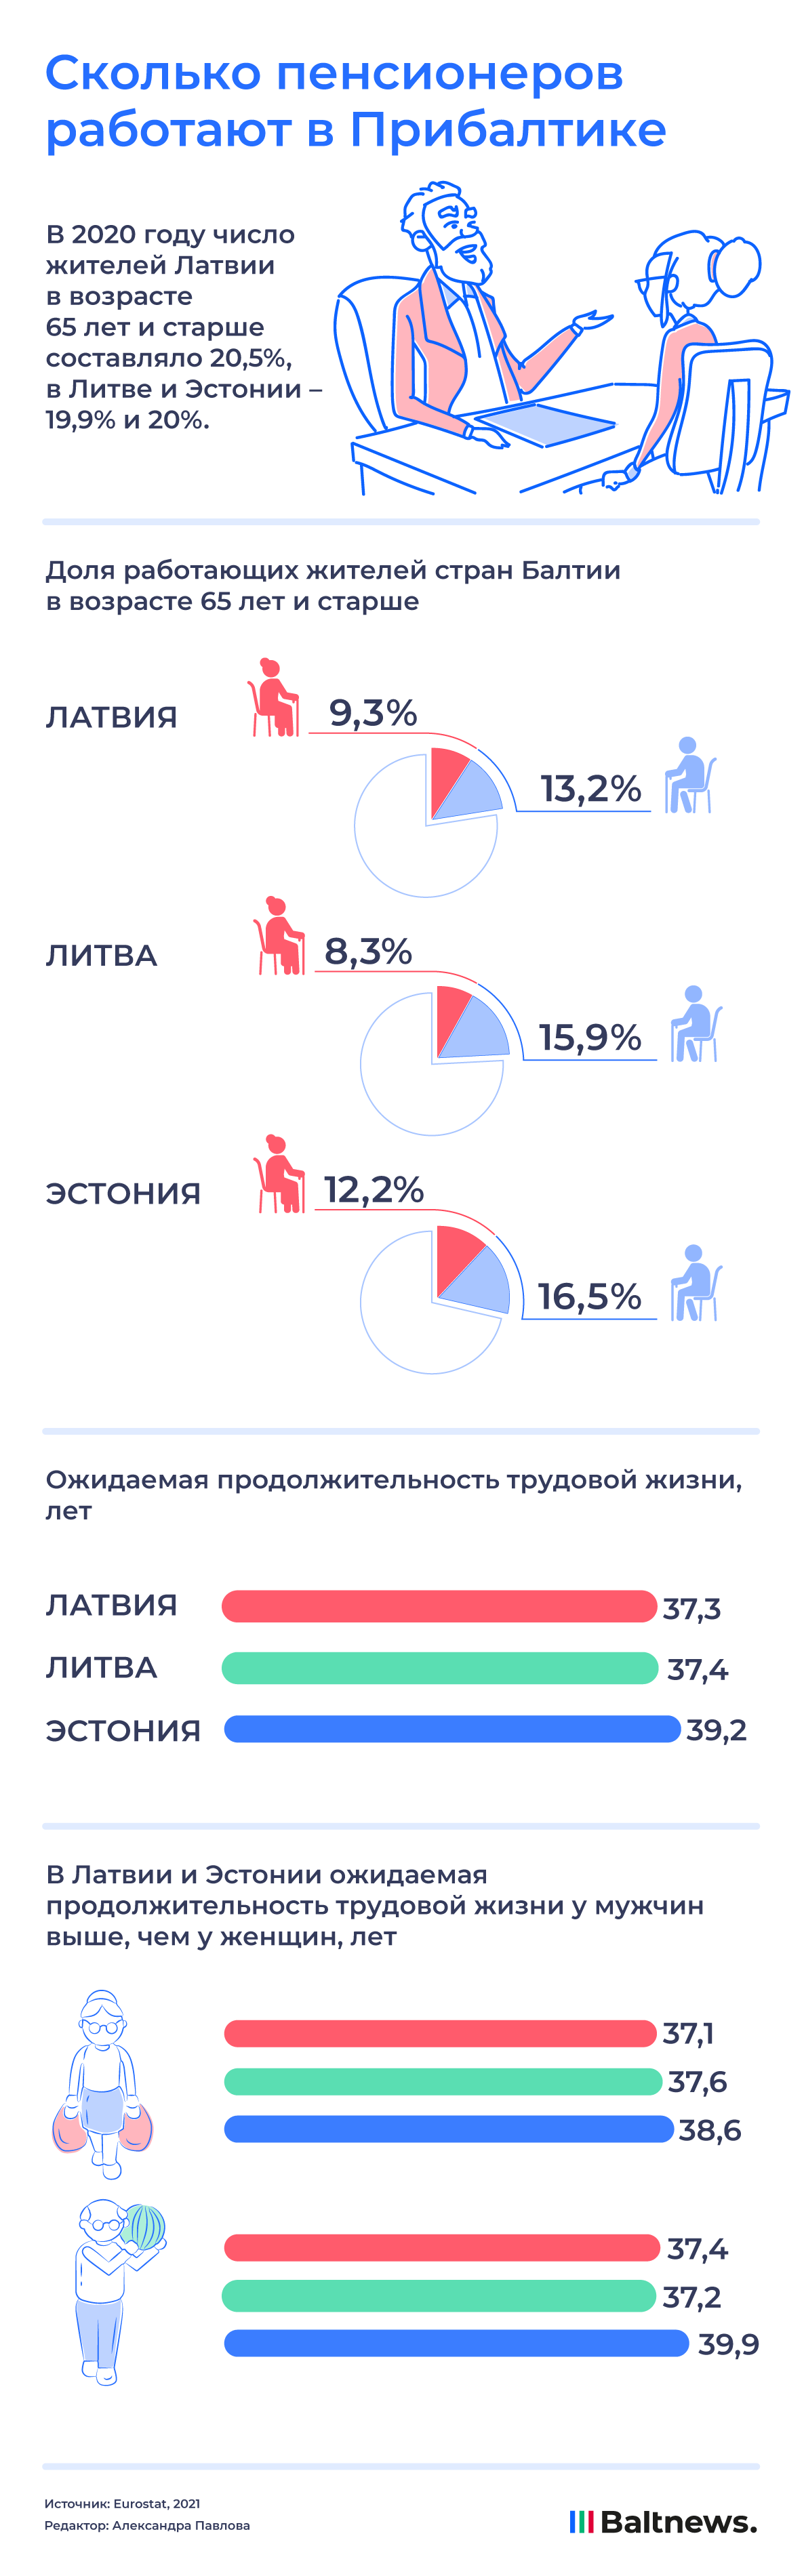 Сколько пенсионеров работают в Прибалтике